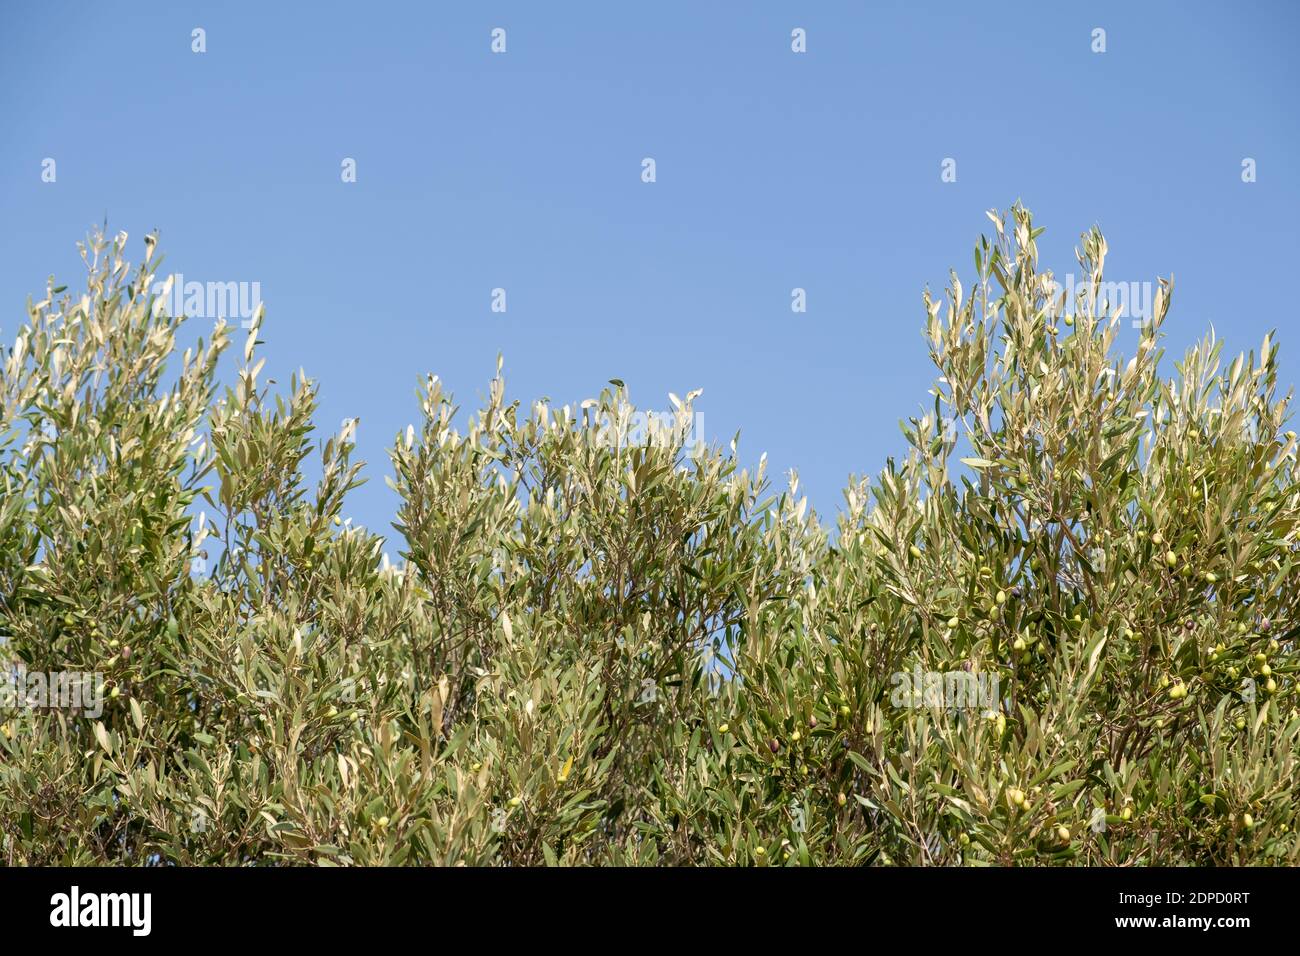 Olivenbaum Zweig vor klaren blauen Himmel Hintergrund. Wilde Bäume auf einer griechischen Insel, mediterrane Flora Stockfoto